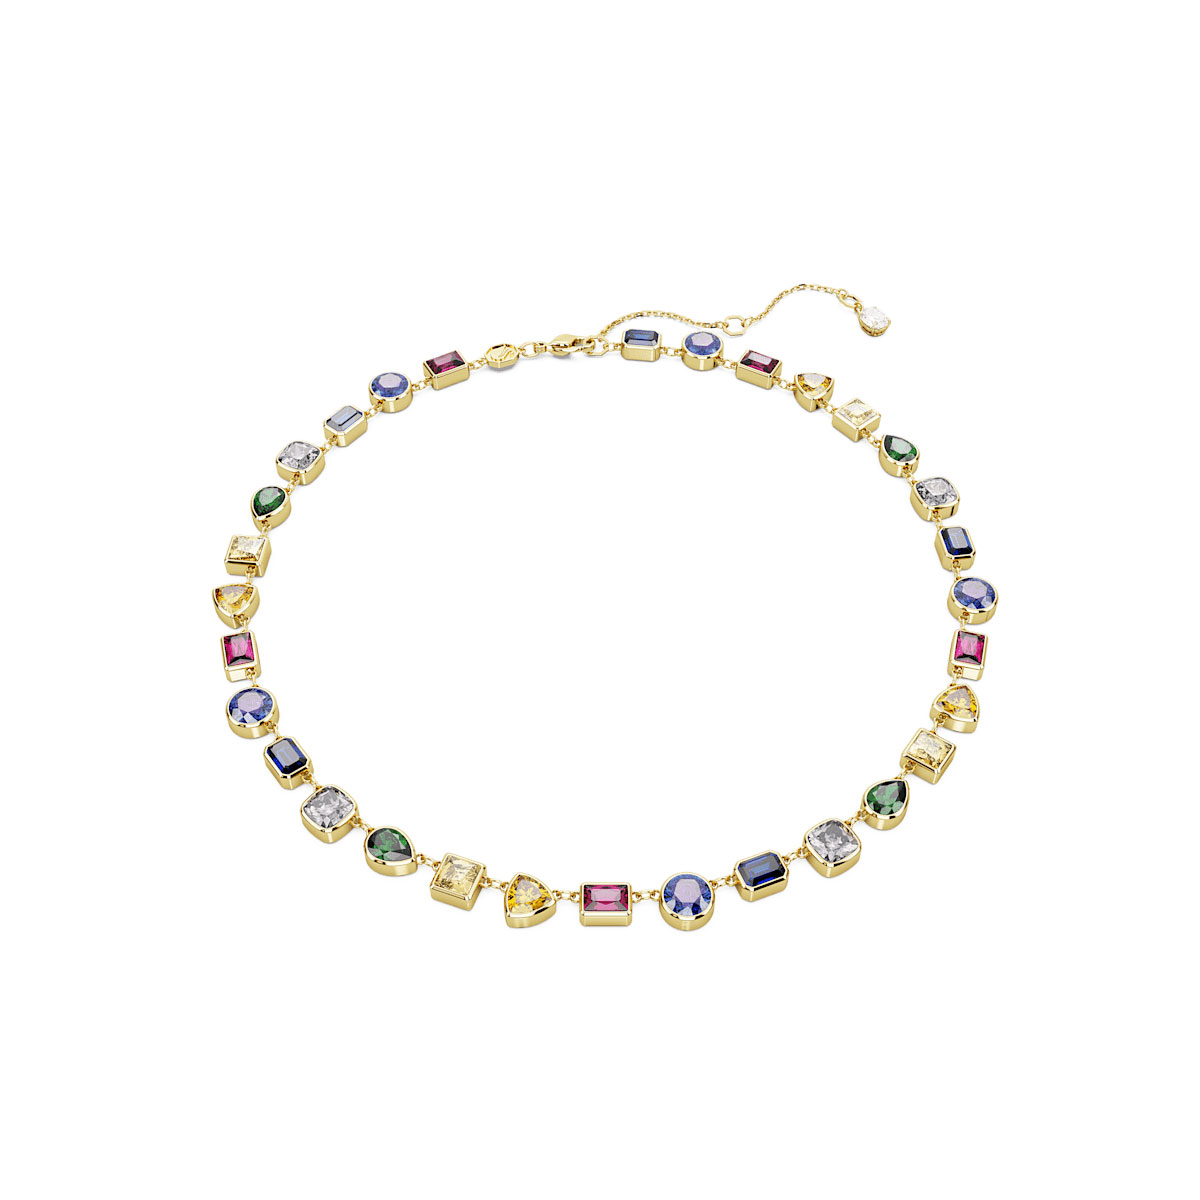 Swarovski Stilla necklace, Mixed cuts, Multicolored, Gold